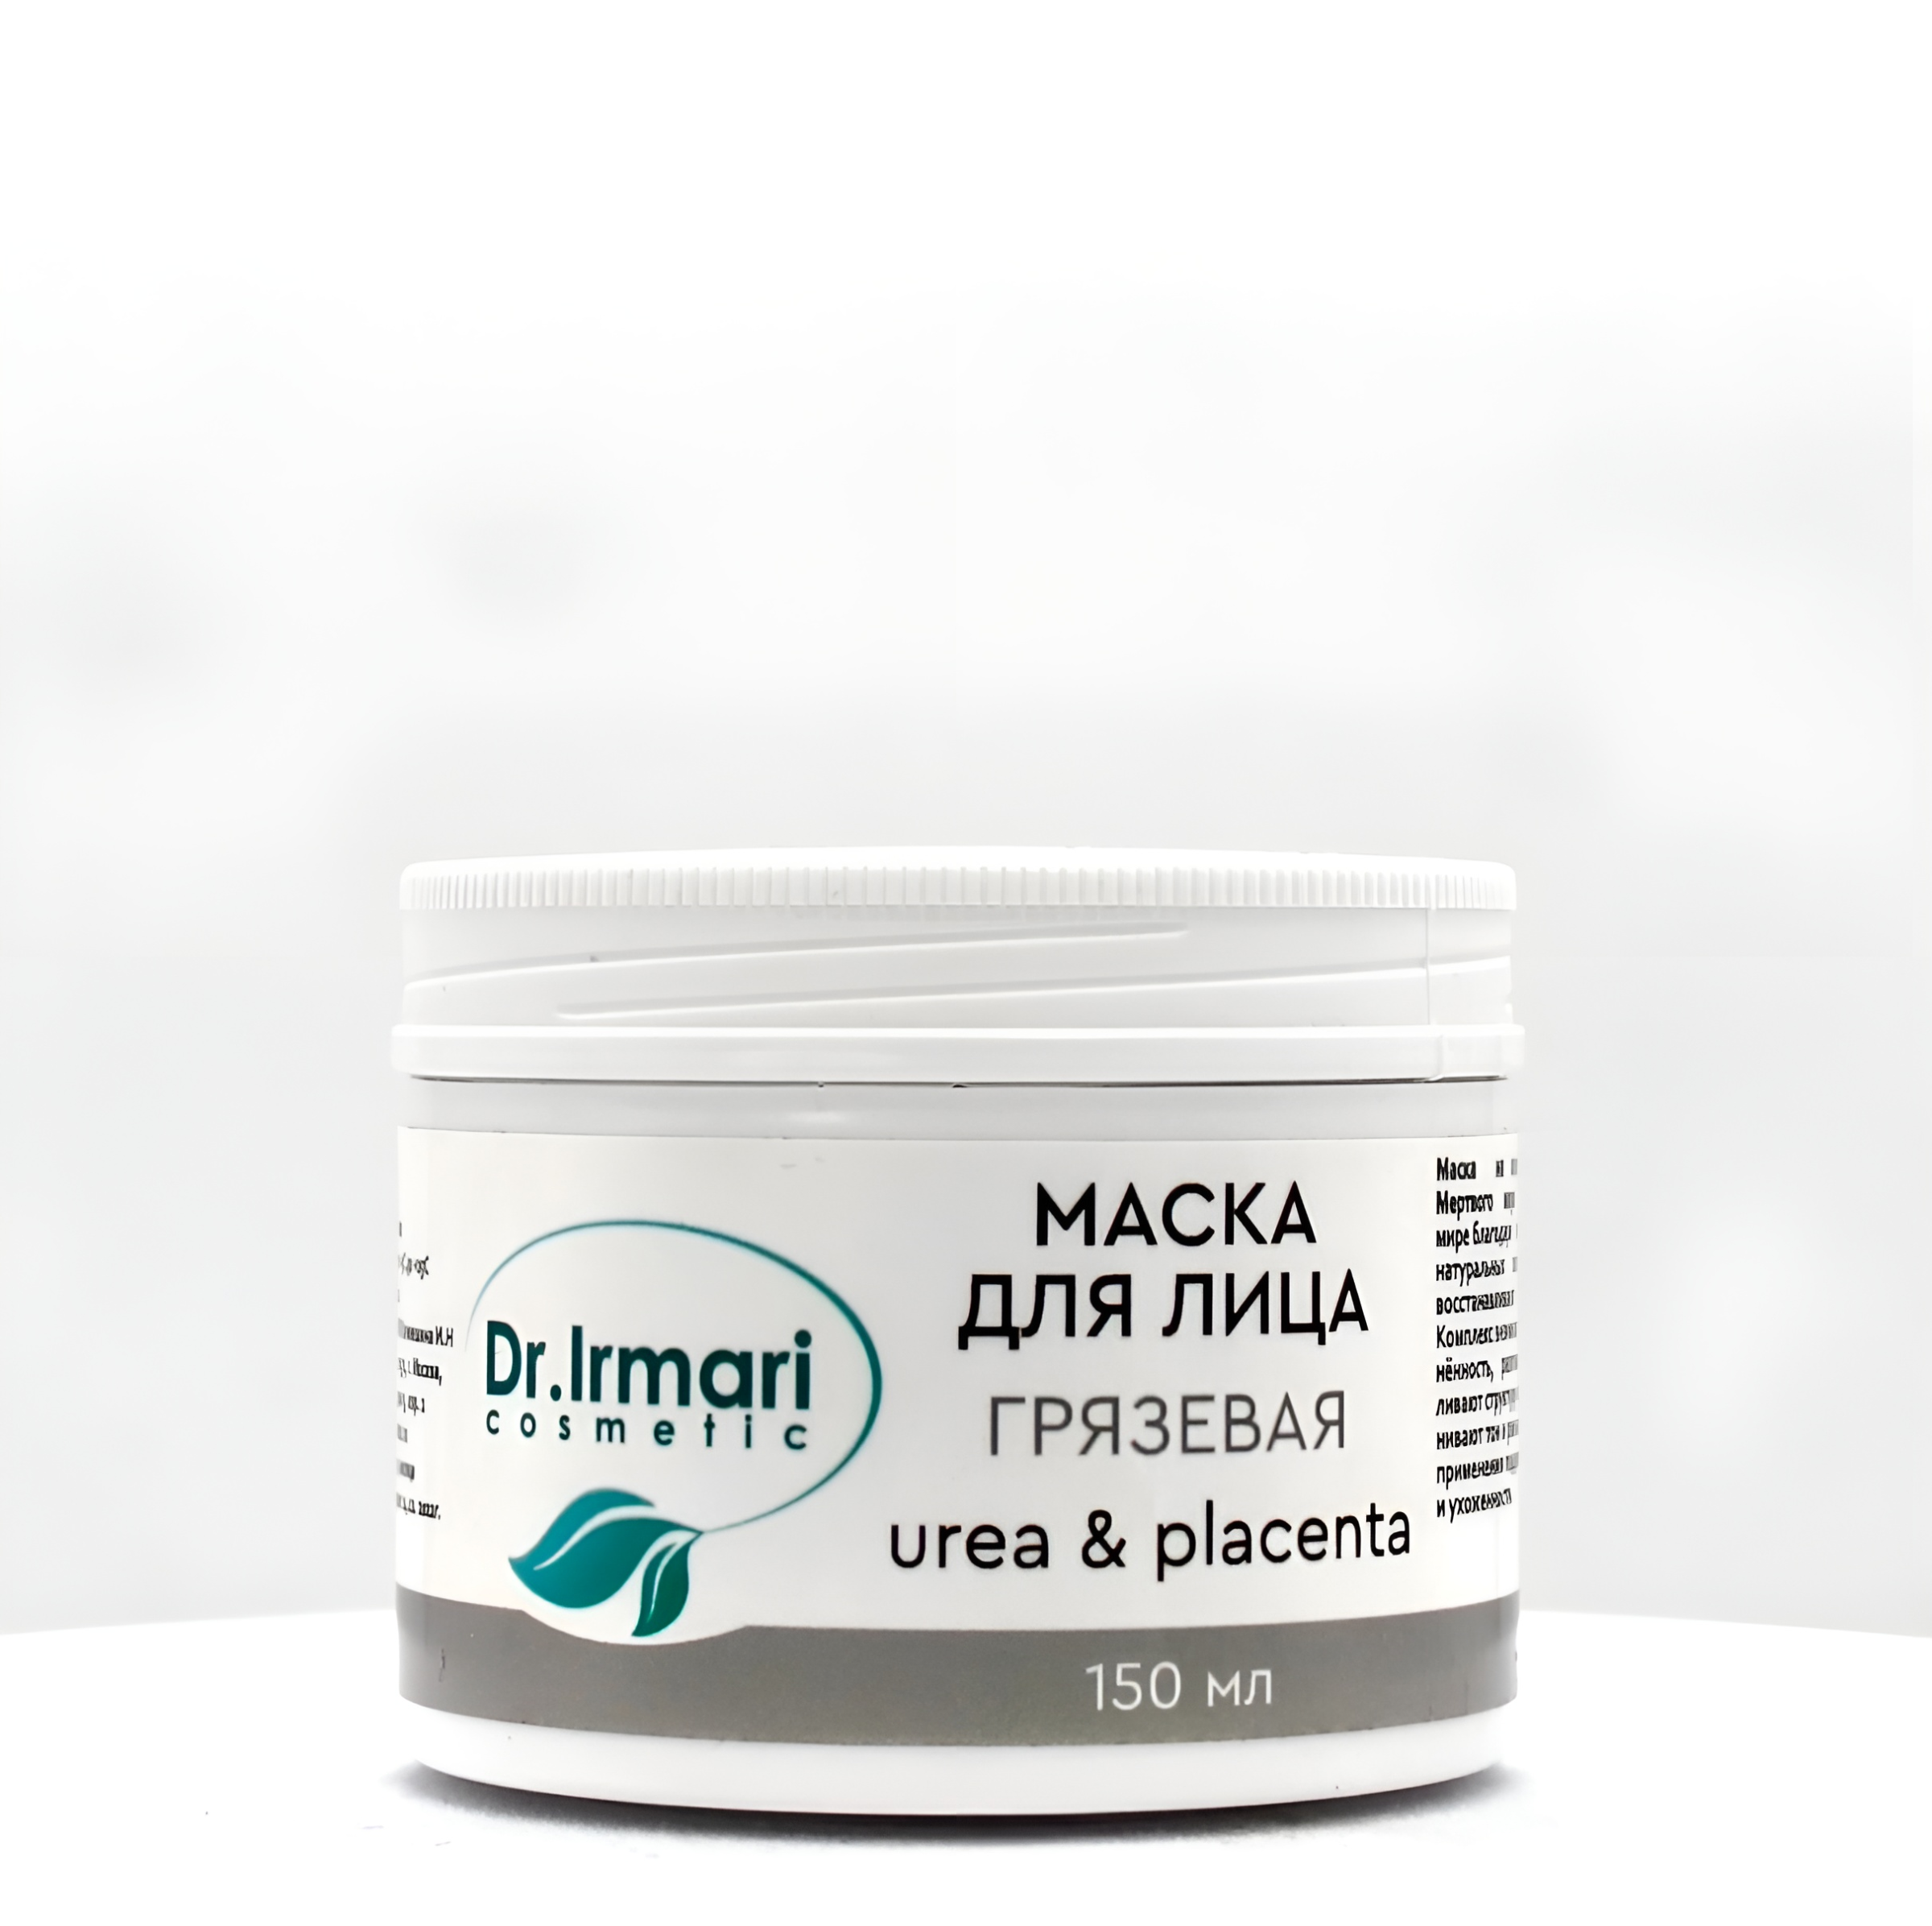 Маска для лица Dr.Irmari cosmetic Urea & Placenta Грязевая 150 мл cremorlab крем лифтинг для лица с высоким содержанием минералов t e n cremor